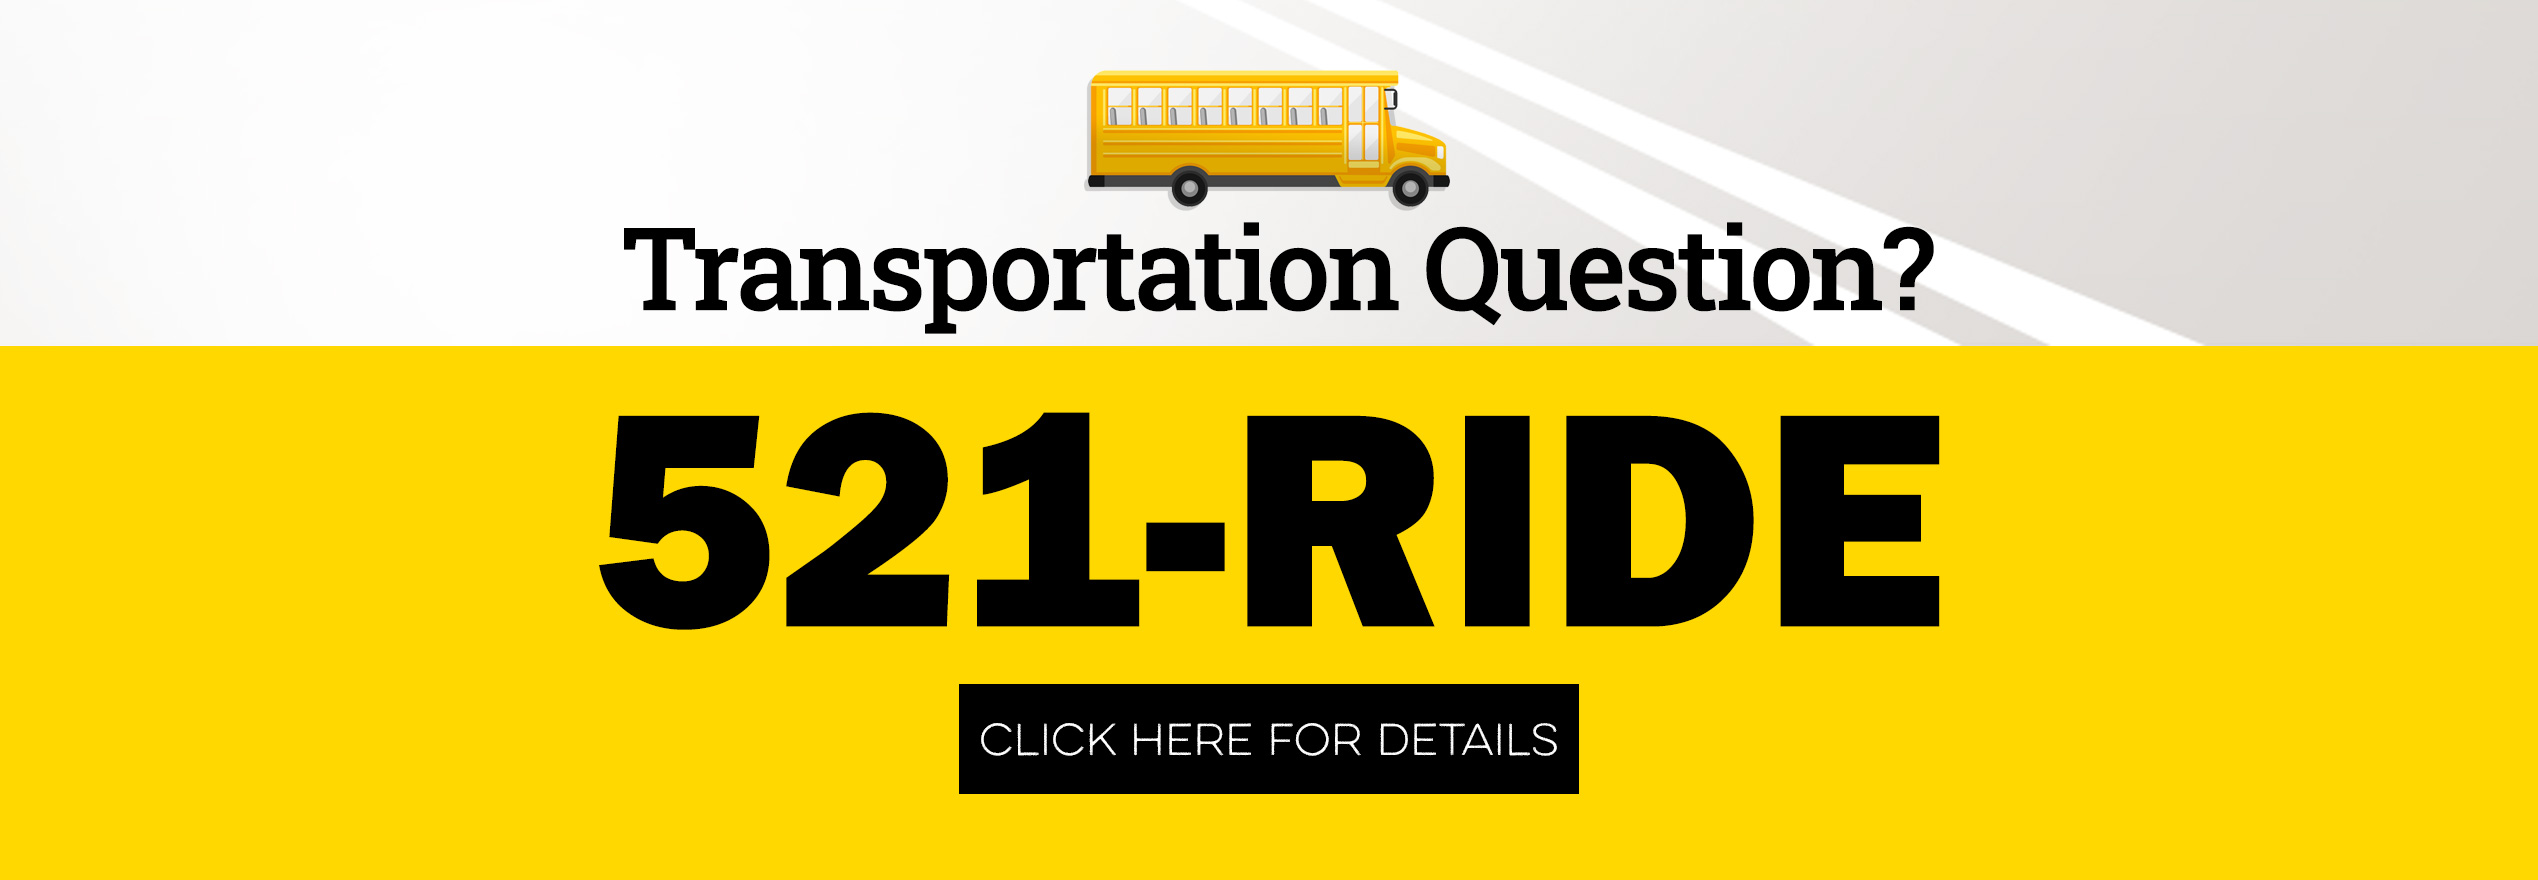 Transportation 521-RIDE